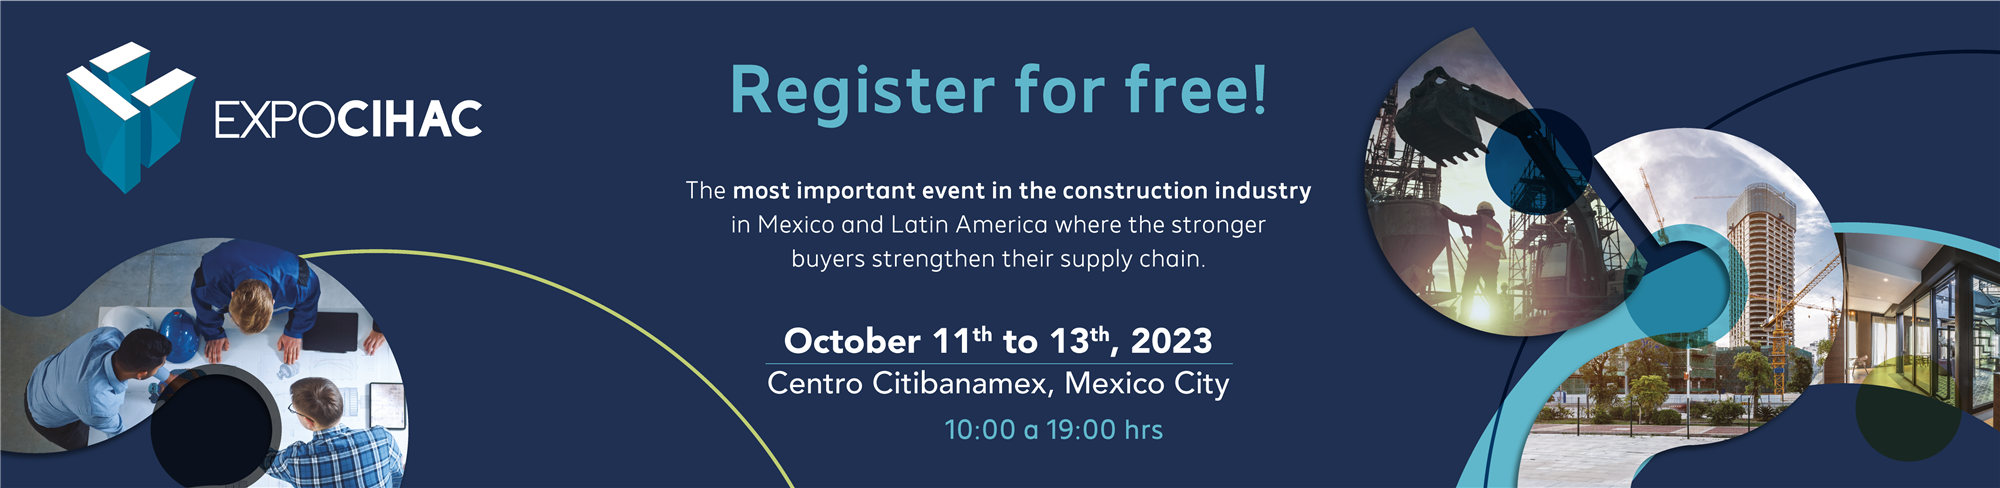 Приглашение на EXPO CIHAC 2023 в Мексике от Dozan Mosaic And Tiles